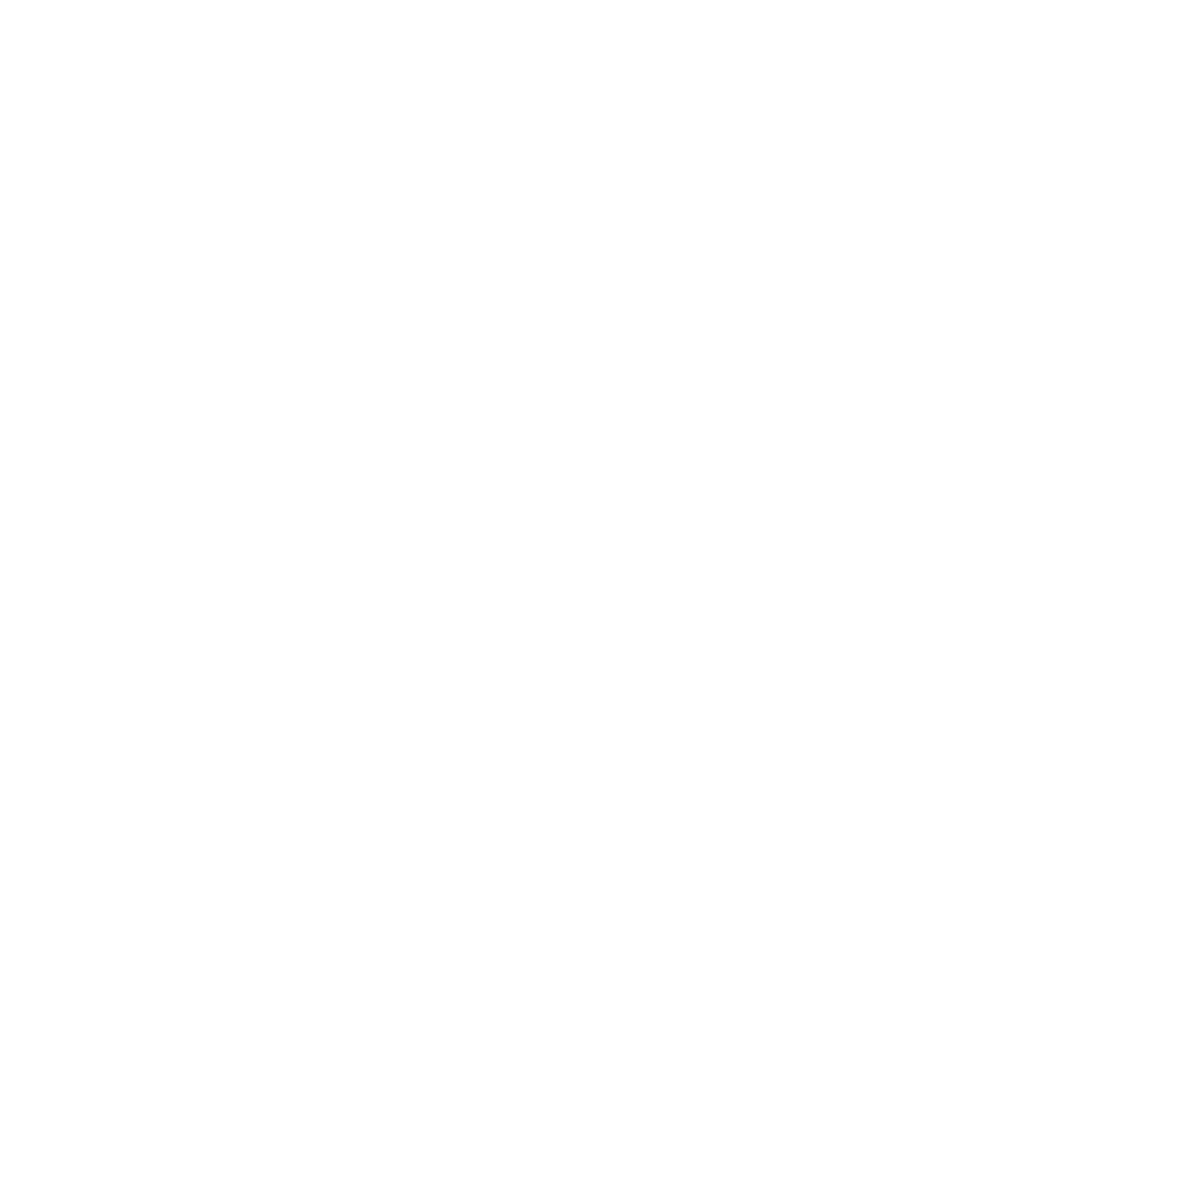 Henry Chambers